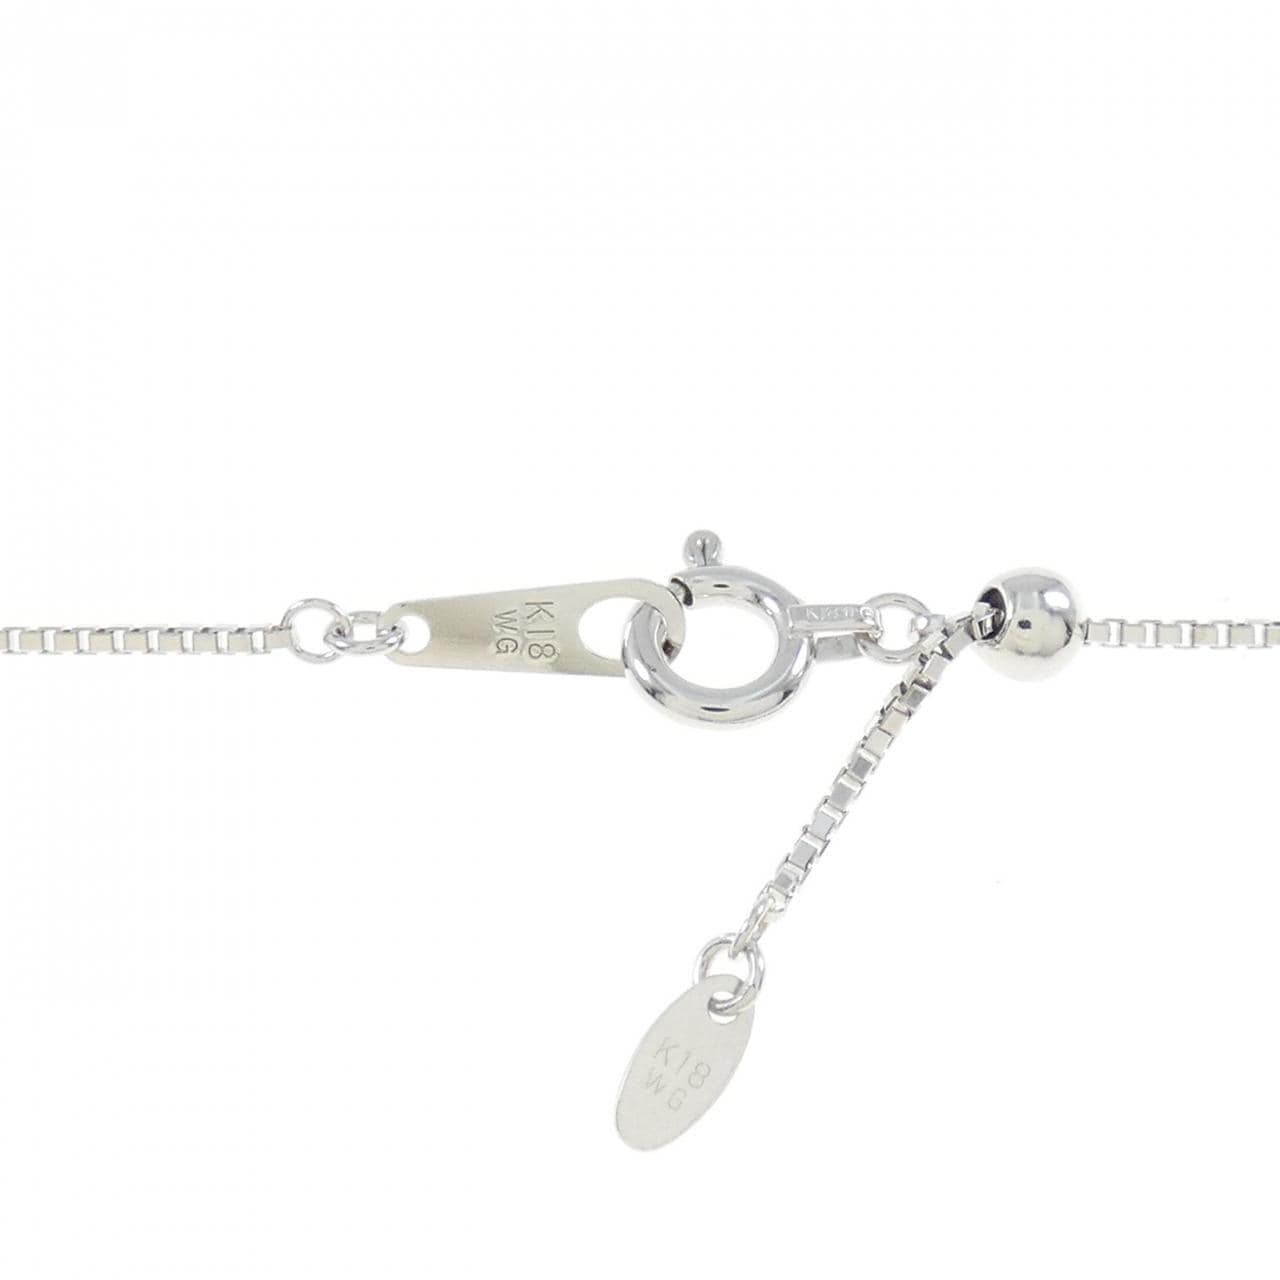 K18WG Aquamarine necklace 2.50CT